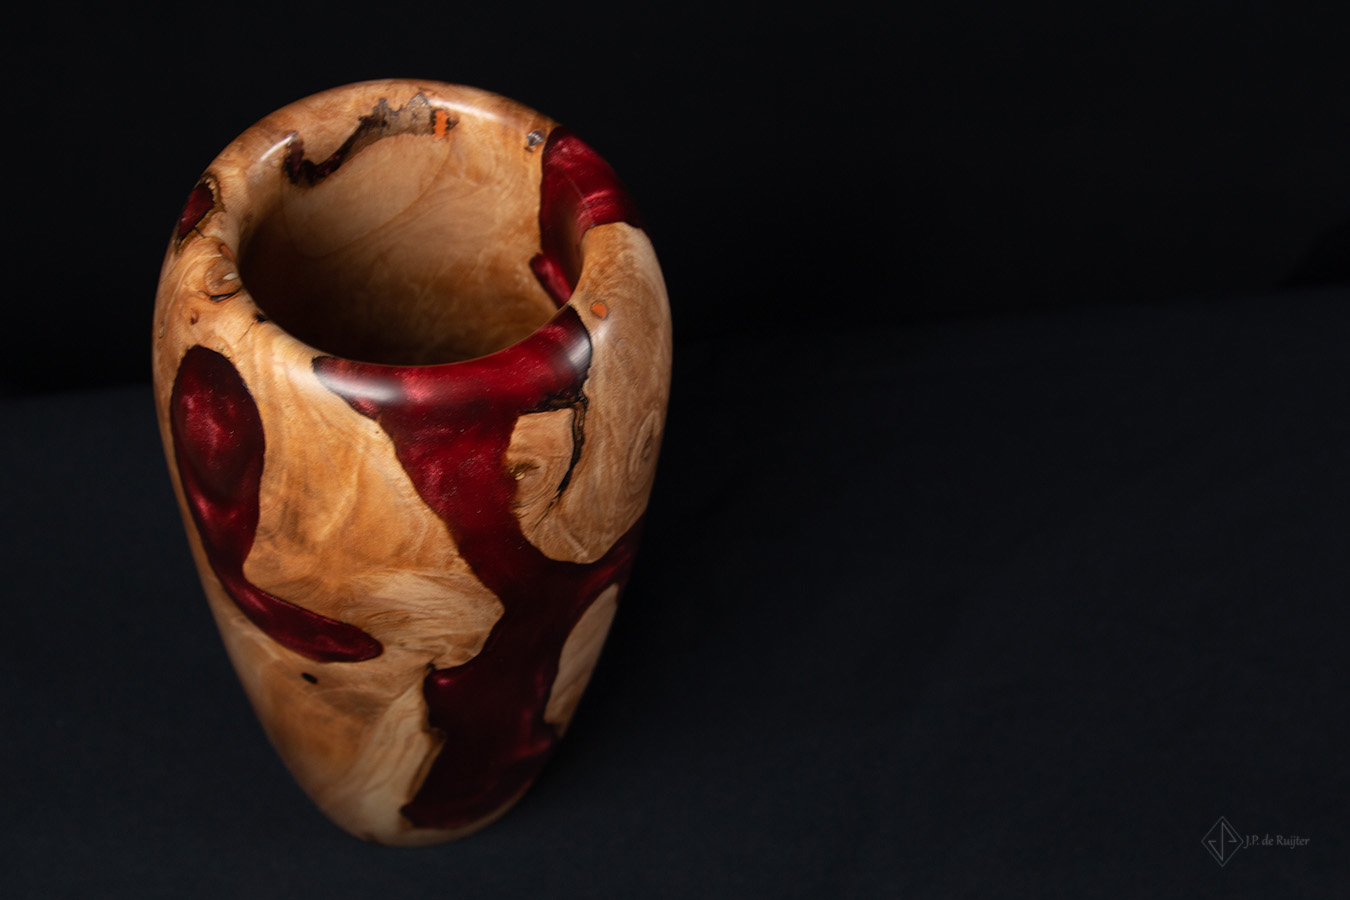 Houtkunst, vaas van hout met epoxy in kersen rood, bovenaanzicht